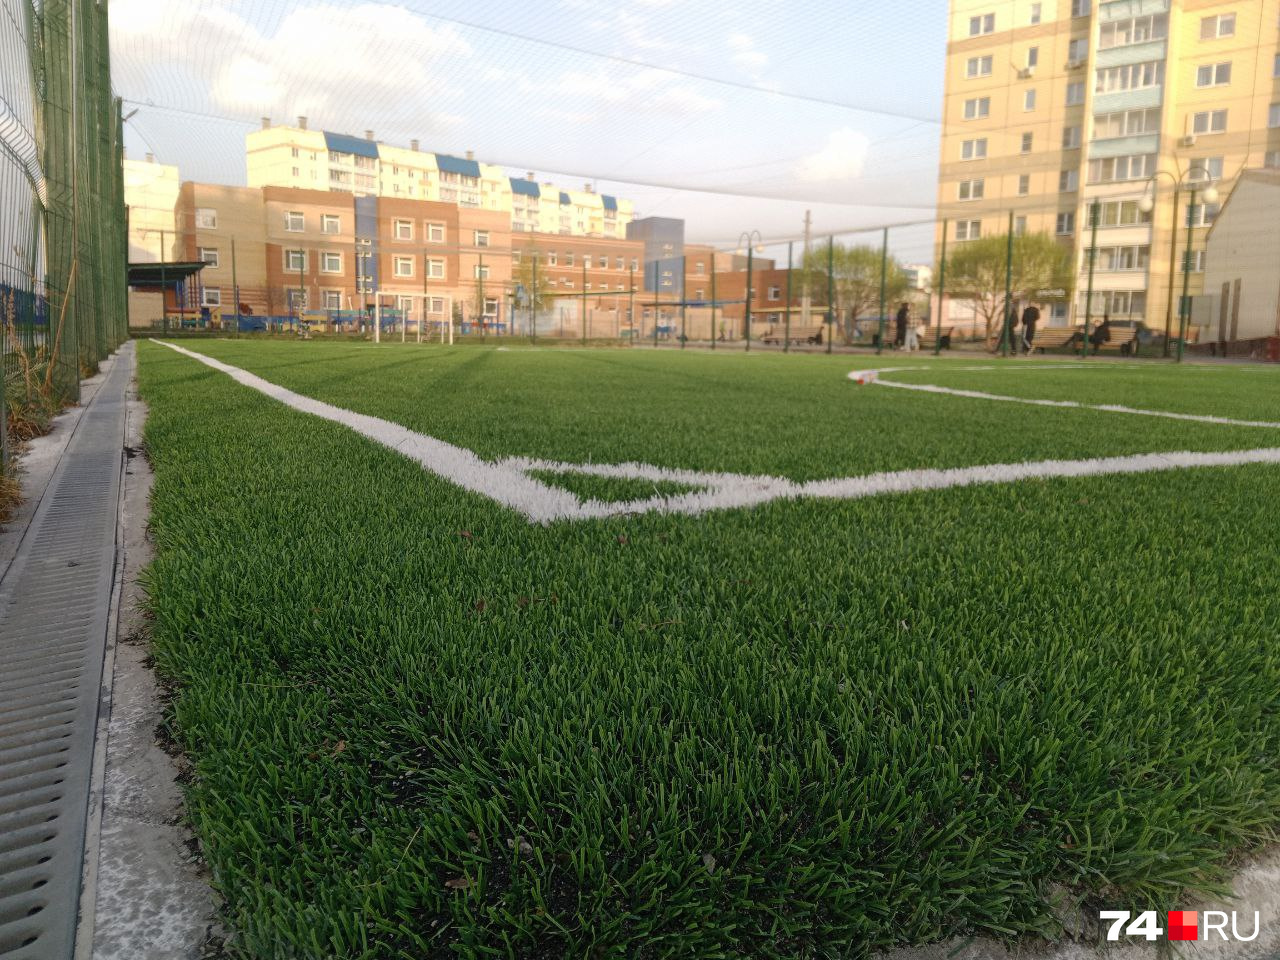 В теплое время футбольное поле пользуется повышенным спросом у жителей Чурилово